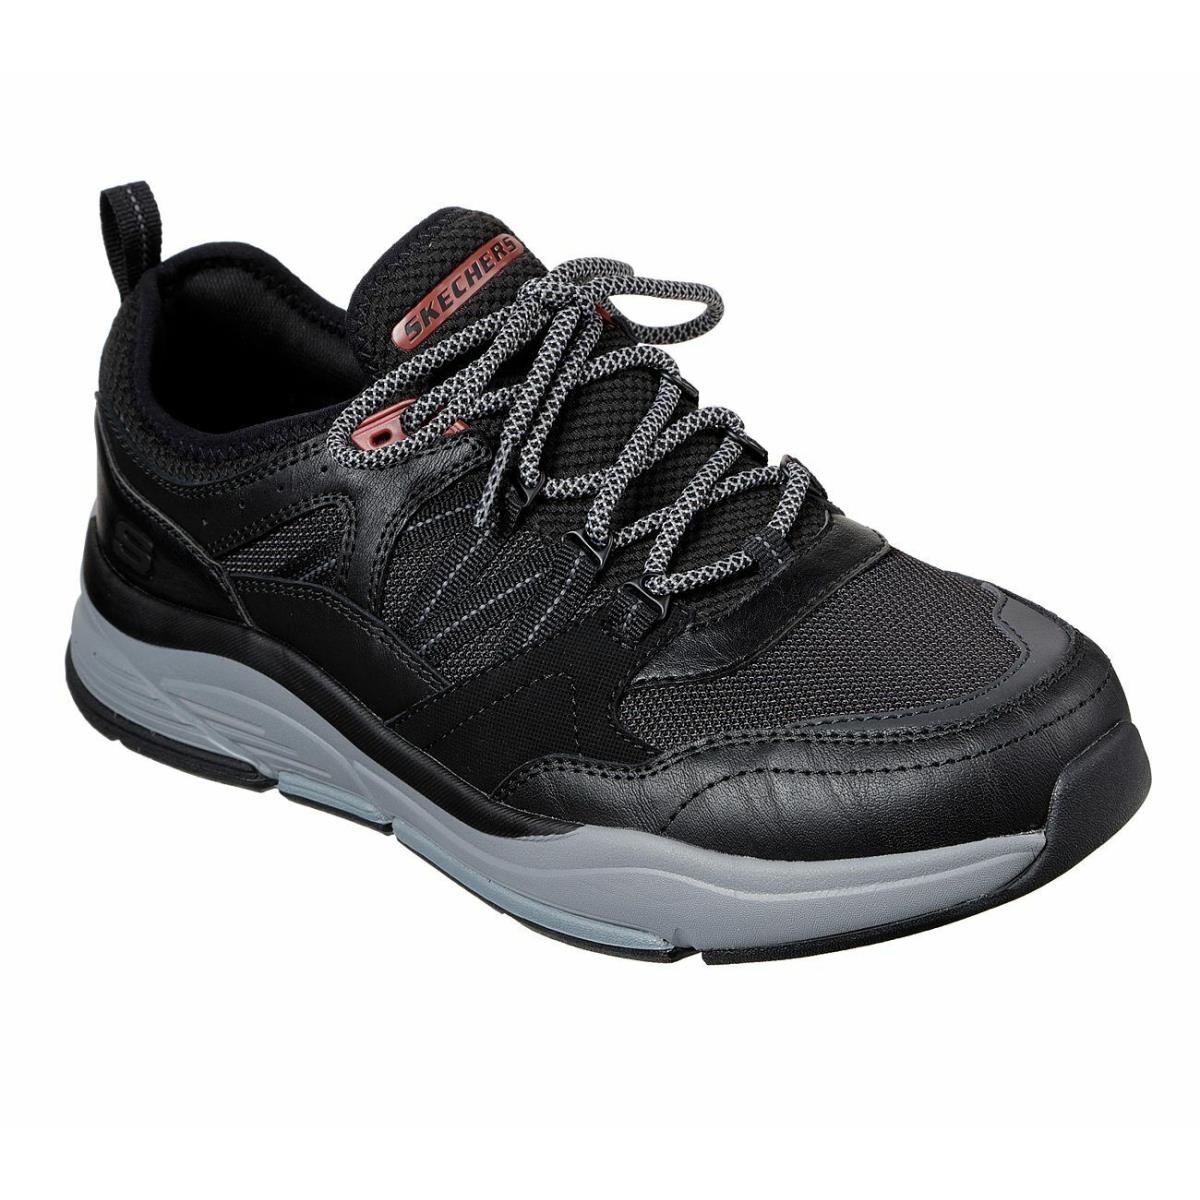 Men`s Skechers RX Fit Benago Flinton Casual Shoes 210022 /blk Multi Sizes Black - Black